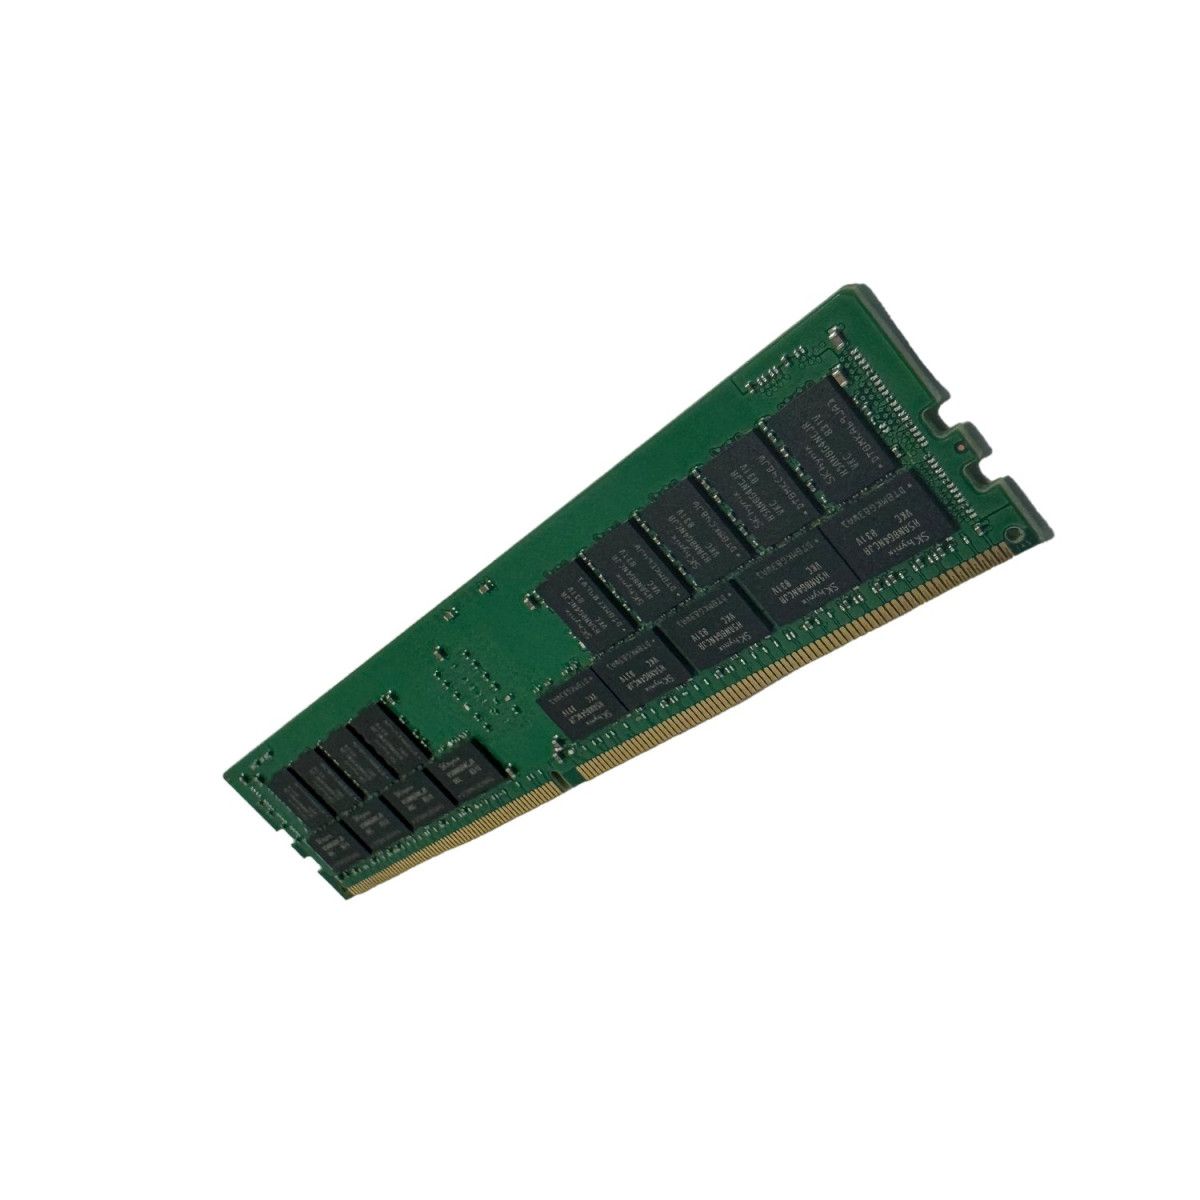 P05592-B21-MS - Memstar 1x 64GB DDR4-2666 RDIMM PC4-21300V-R - Mem-star Compatible OEM Memory 1 - Memstar 